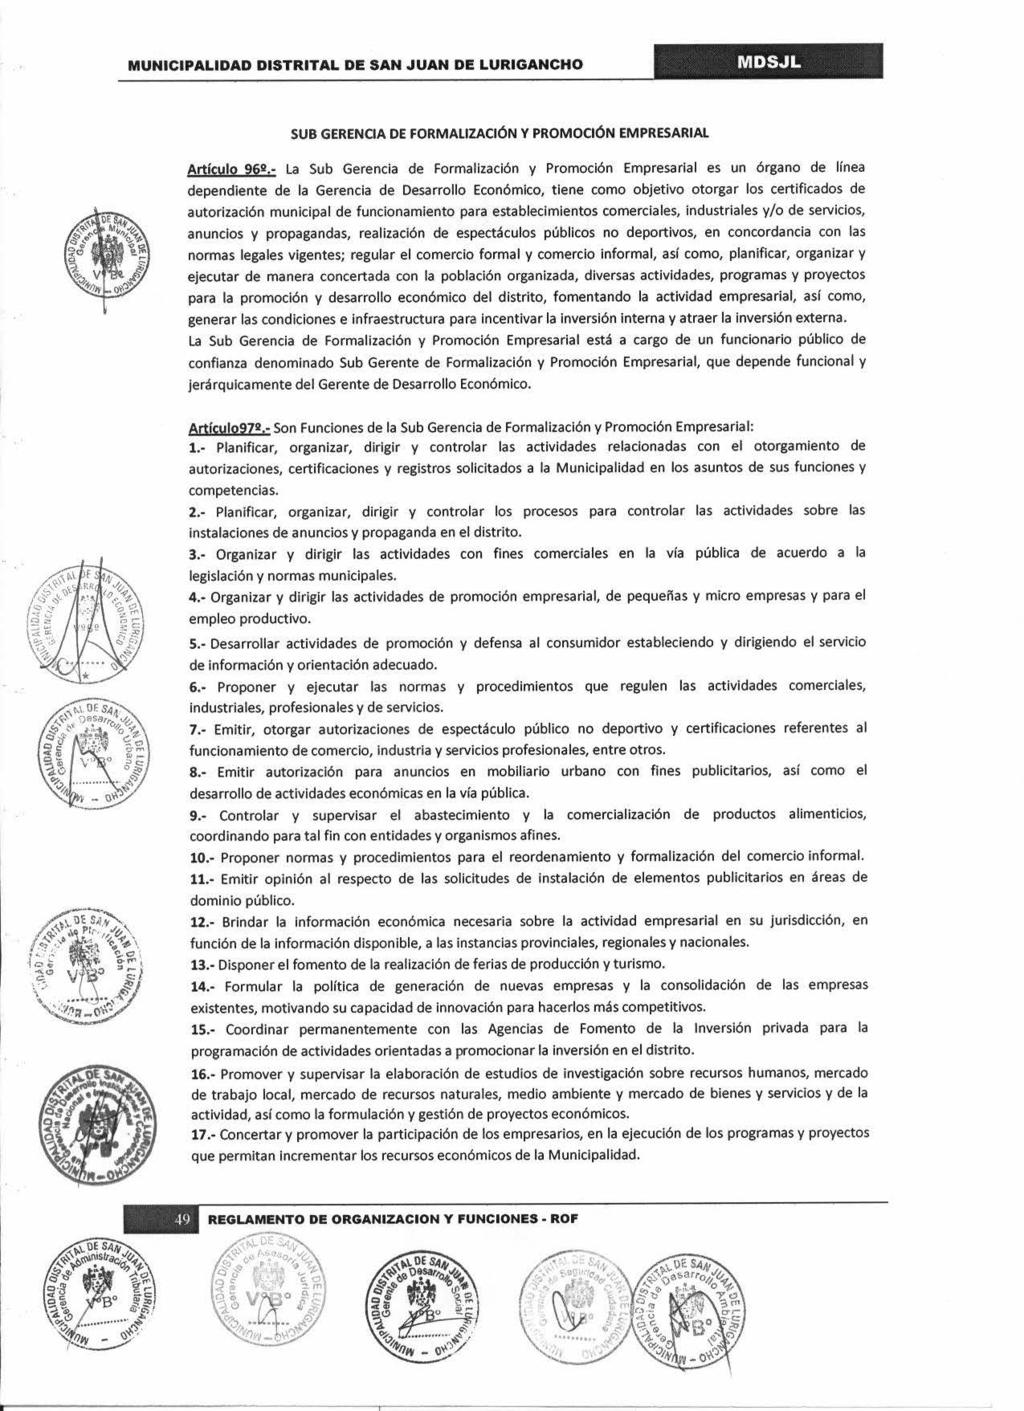 SUB GERENCIA DE FORMALIZACIÓN Y PROMOCIÓN EMPRESARIAL Articulo 9611,.